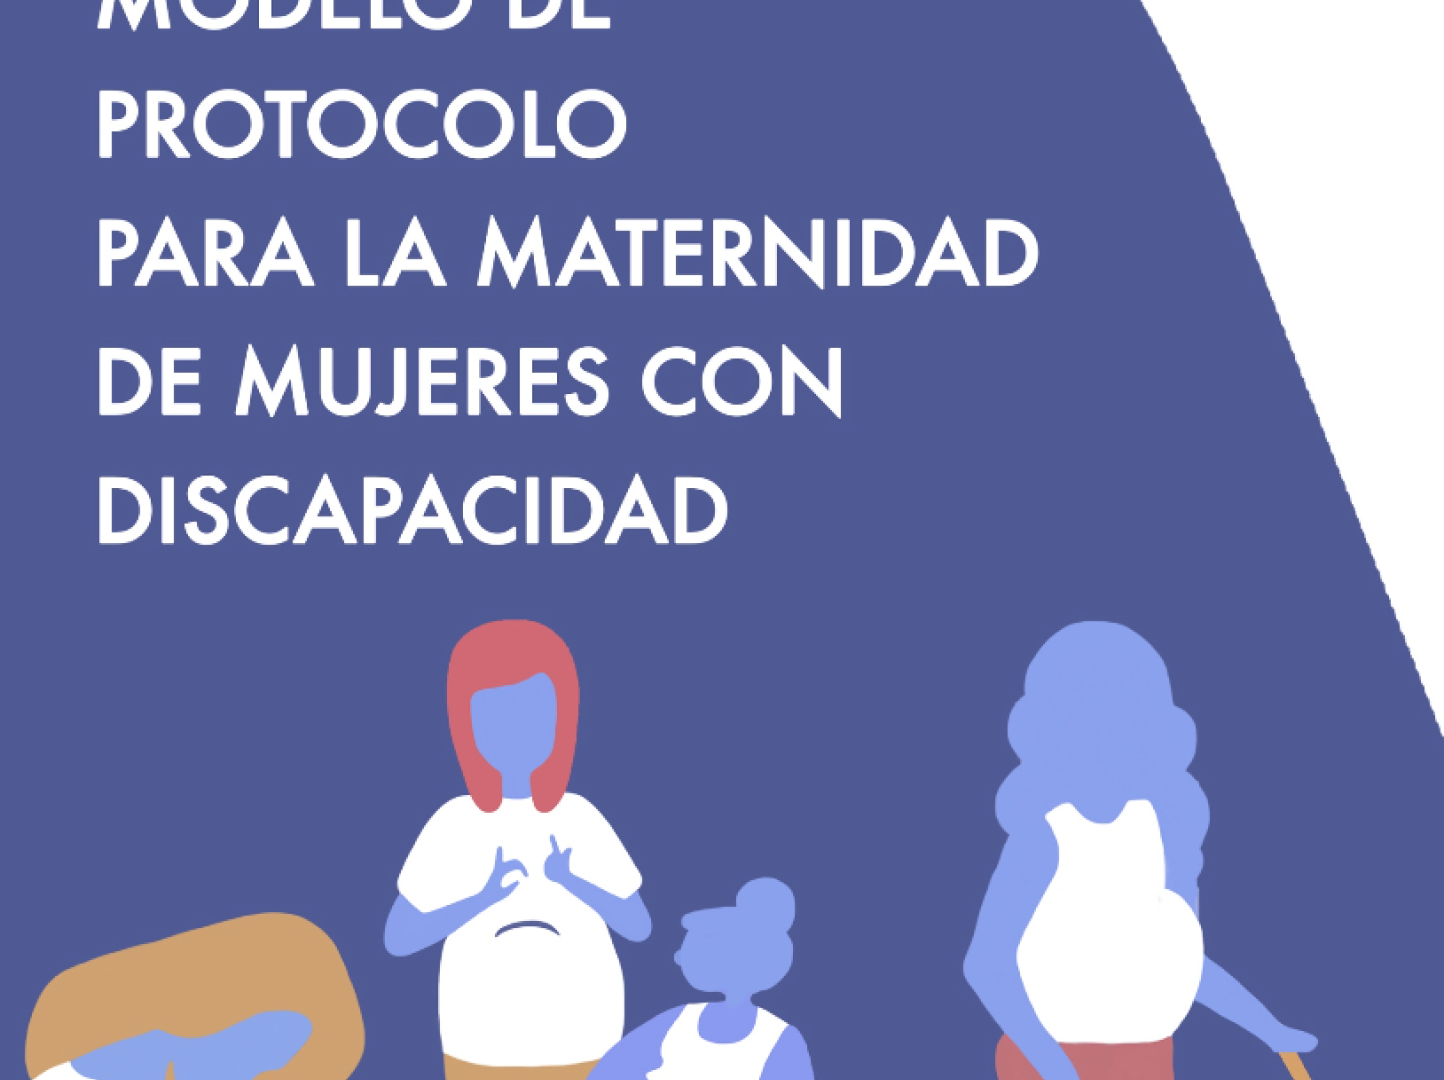 Modelo de Protocolo para la Maternidad de Mujeres con Discapacidad